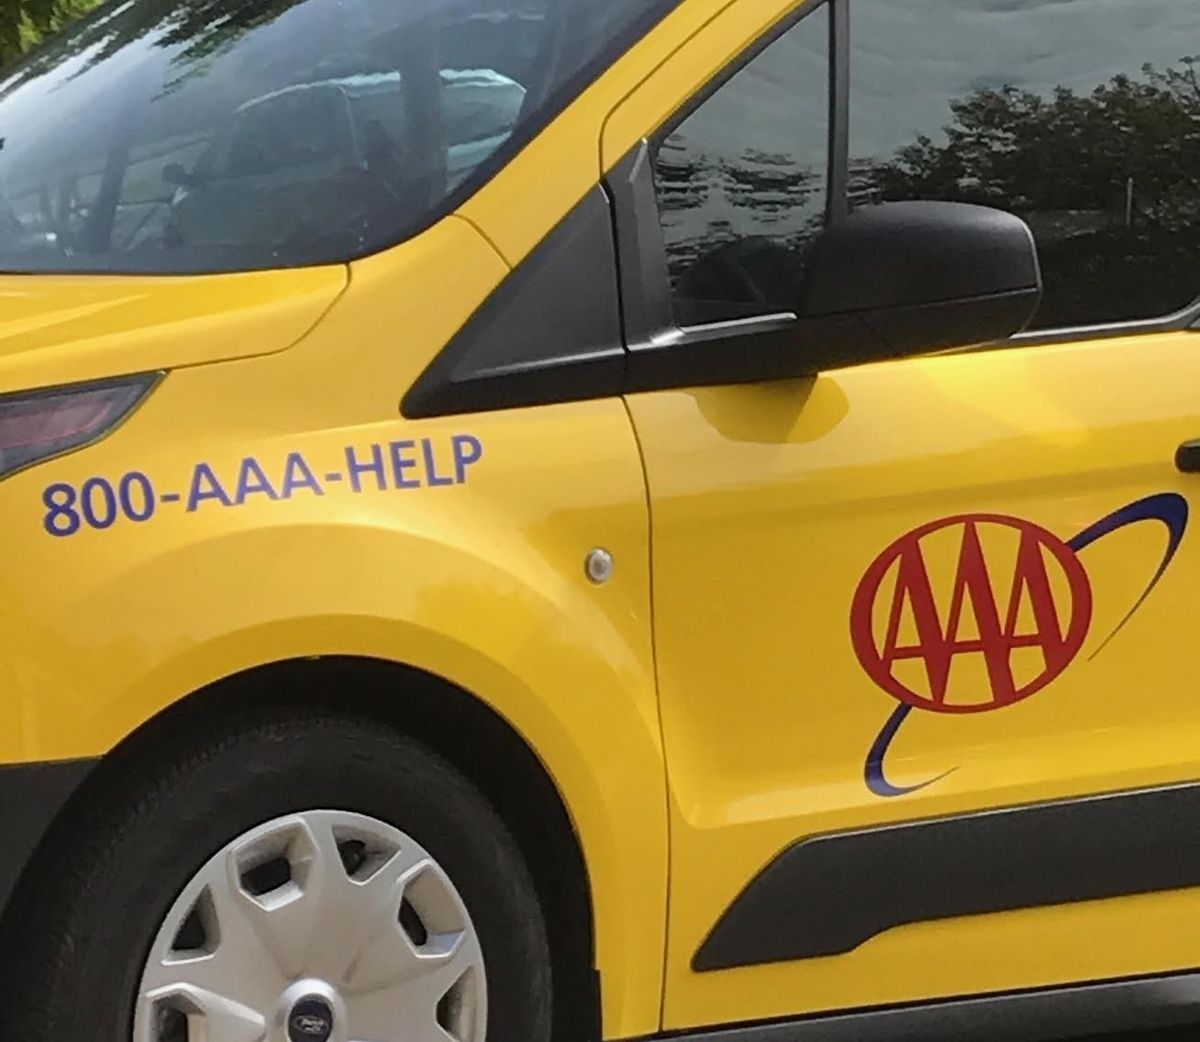 დედამ უნდა დარეკა AAA ბიჭისთვის AAA– დან, რადგან მან ჩაკეტა მანქანა და ცდილობდა მისი მანქანის განბლოკვას